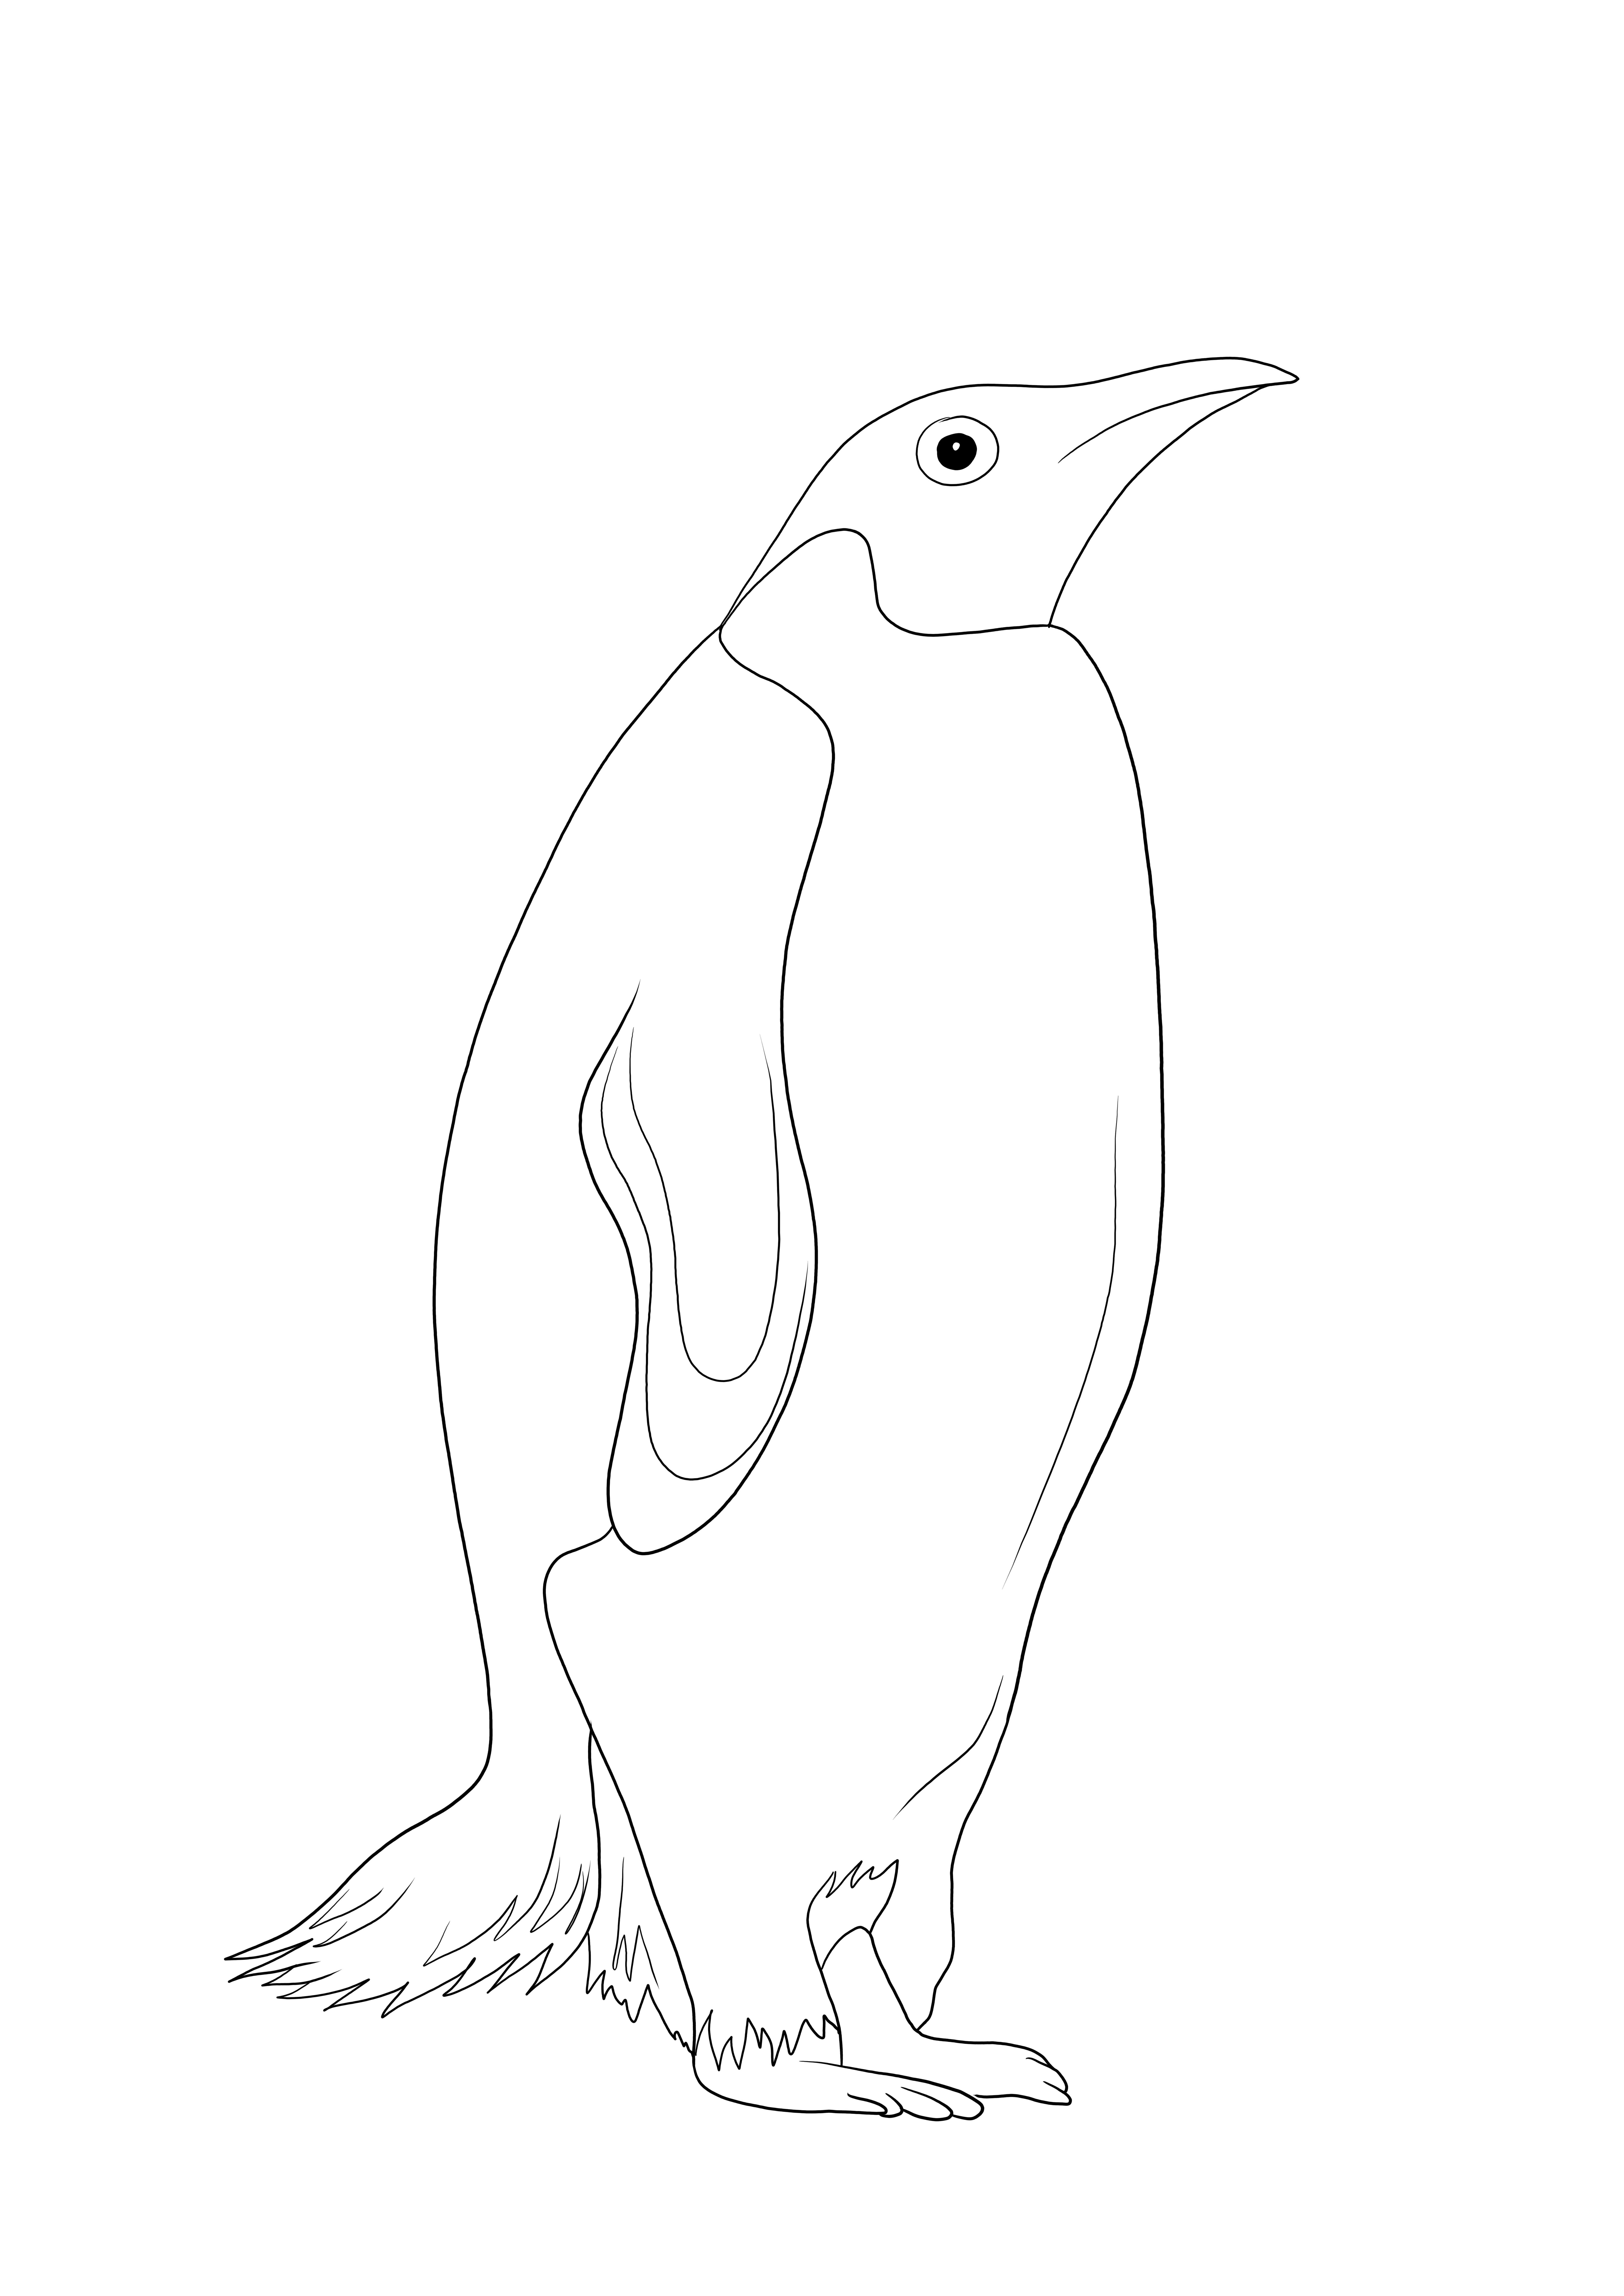 La hoja para colorear inteligente y gratuita de un pingüino: una gran herramienta para aprender sobre los animales marinos.